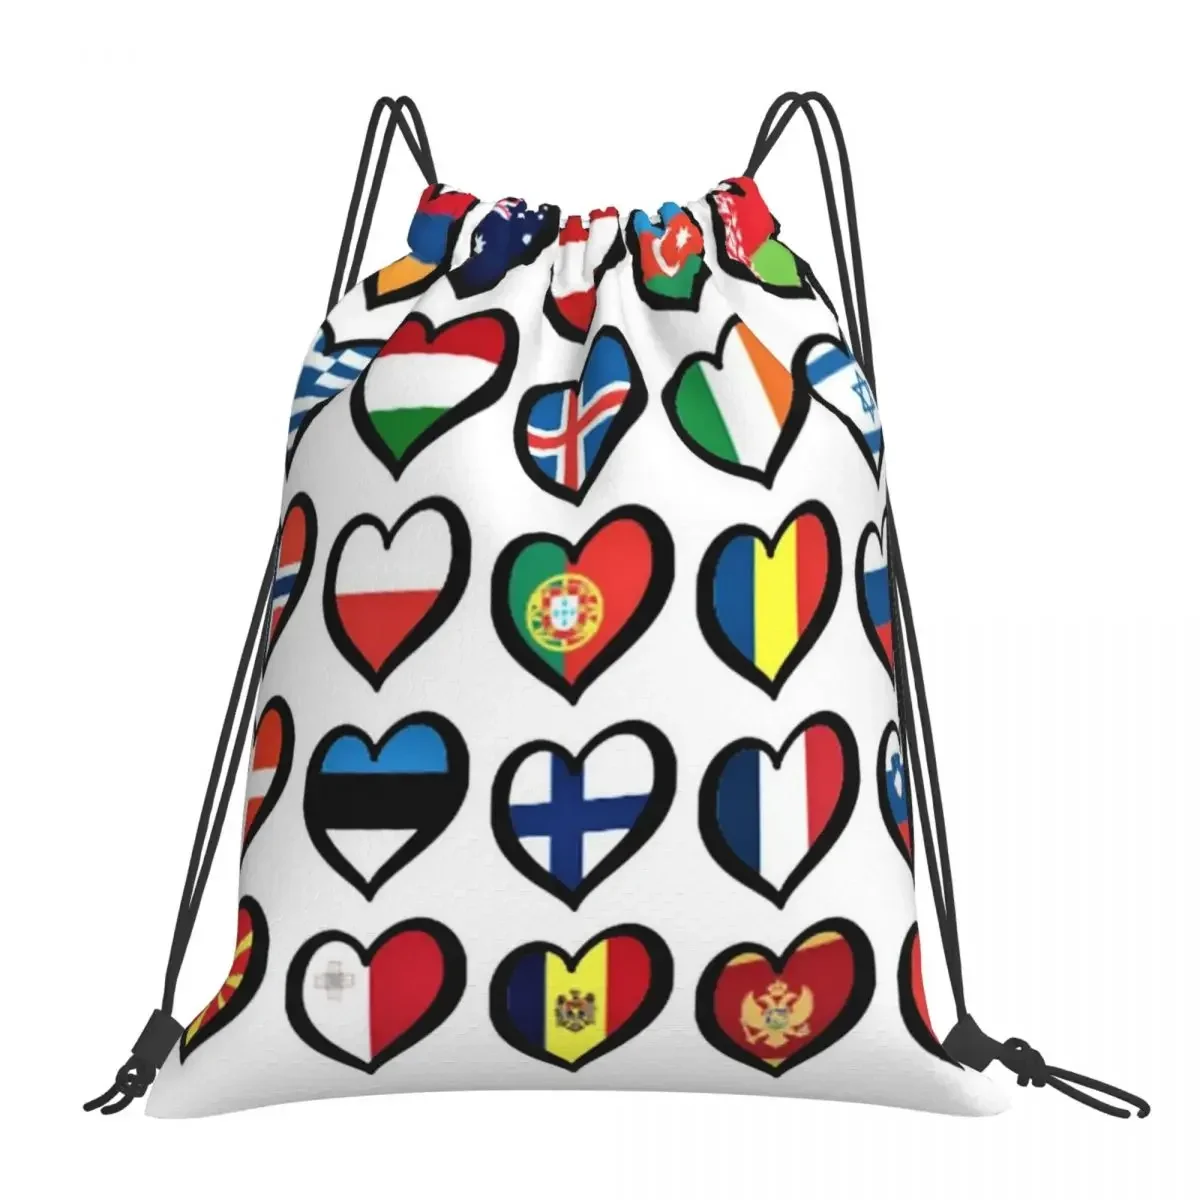 

Рюкзак с флажками и сердечками Eurovision Song Contest, вместительная детская школьная сумка, сумка на плечо, рюкзак для ноутбука, дорожный рюкзак